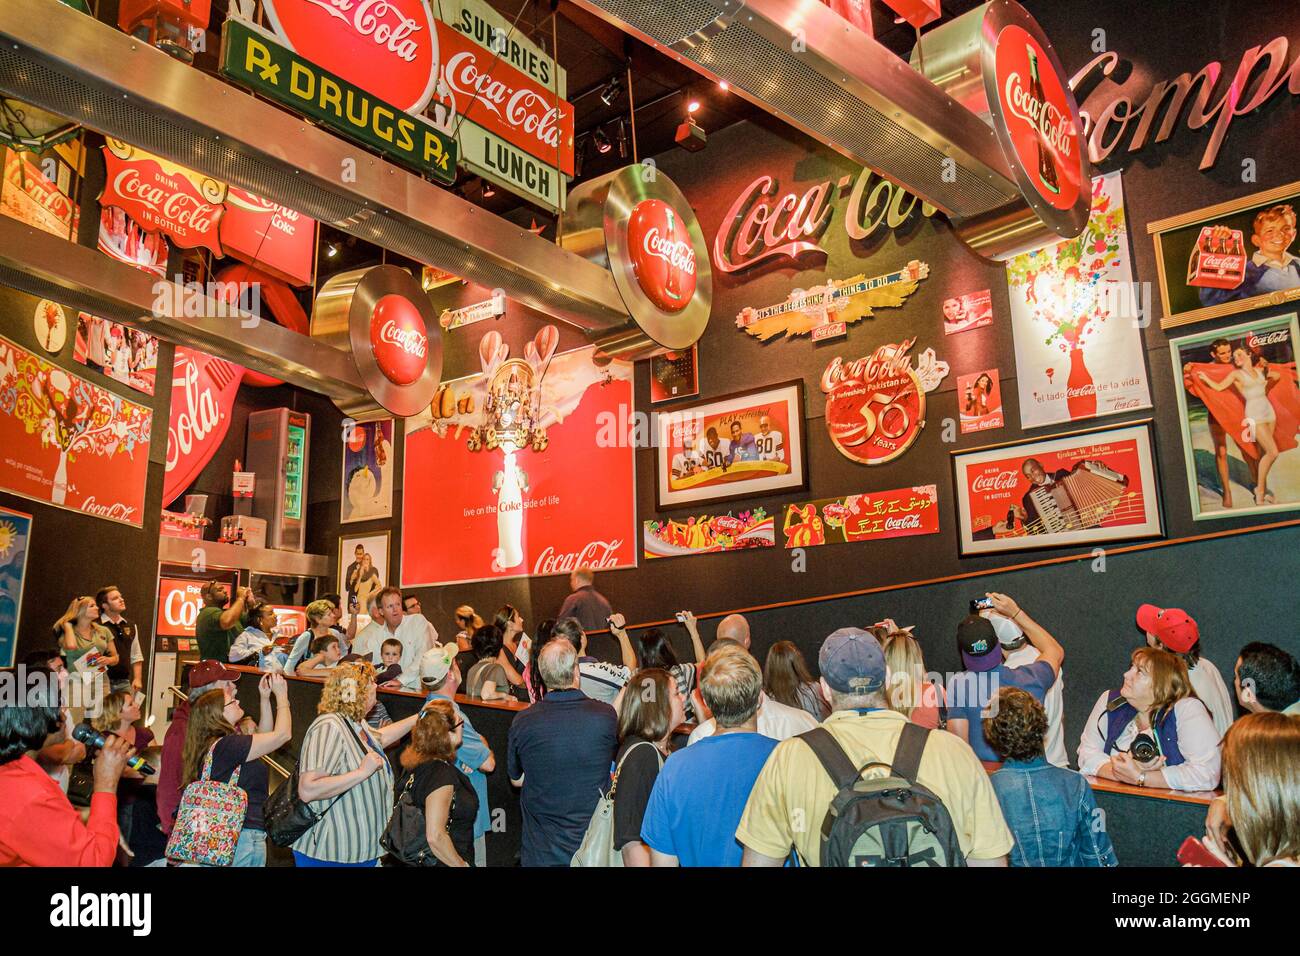 Atlanta, Georgia, museo World of Coca Cola, mostre, collezione di cimeli americani che pubblicizzano insegne al neon, interni, famiglie e visitatori Foto Stock